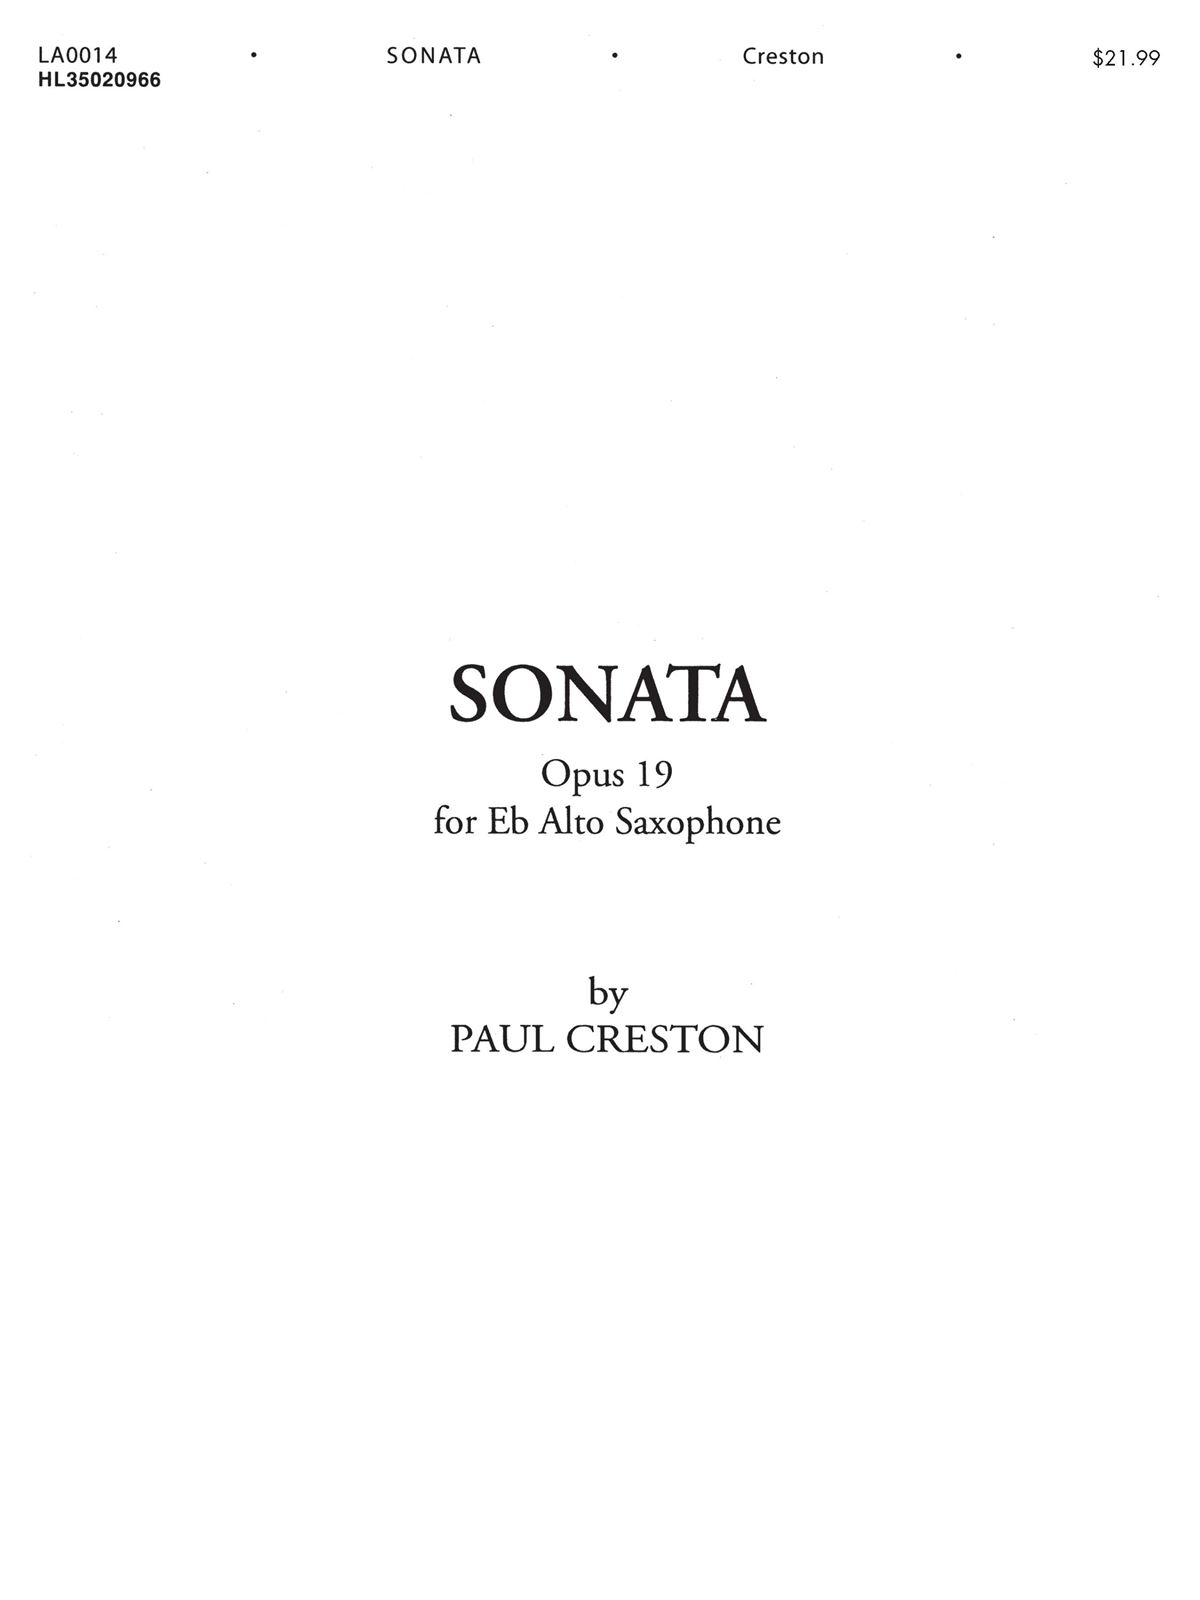 Sonata Opus 19 for Eb Alto Saxophone and Piano